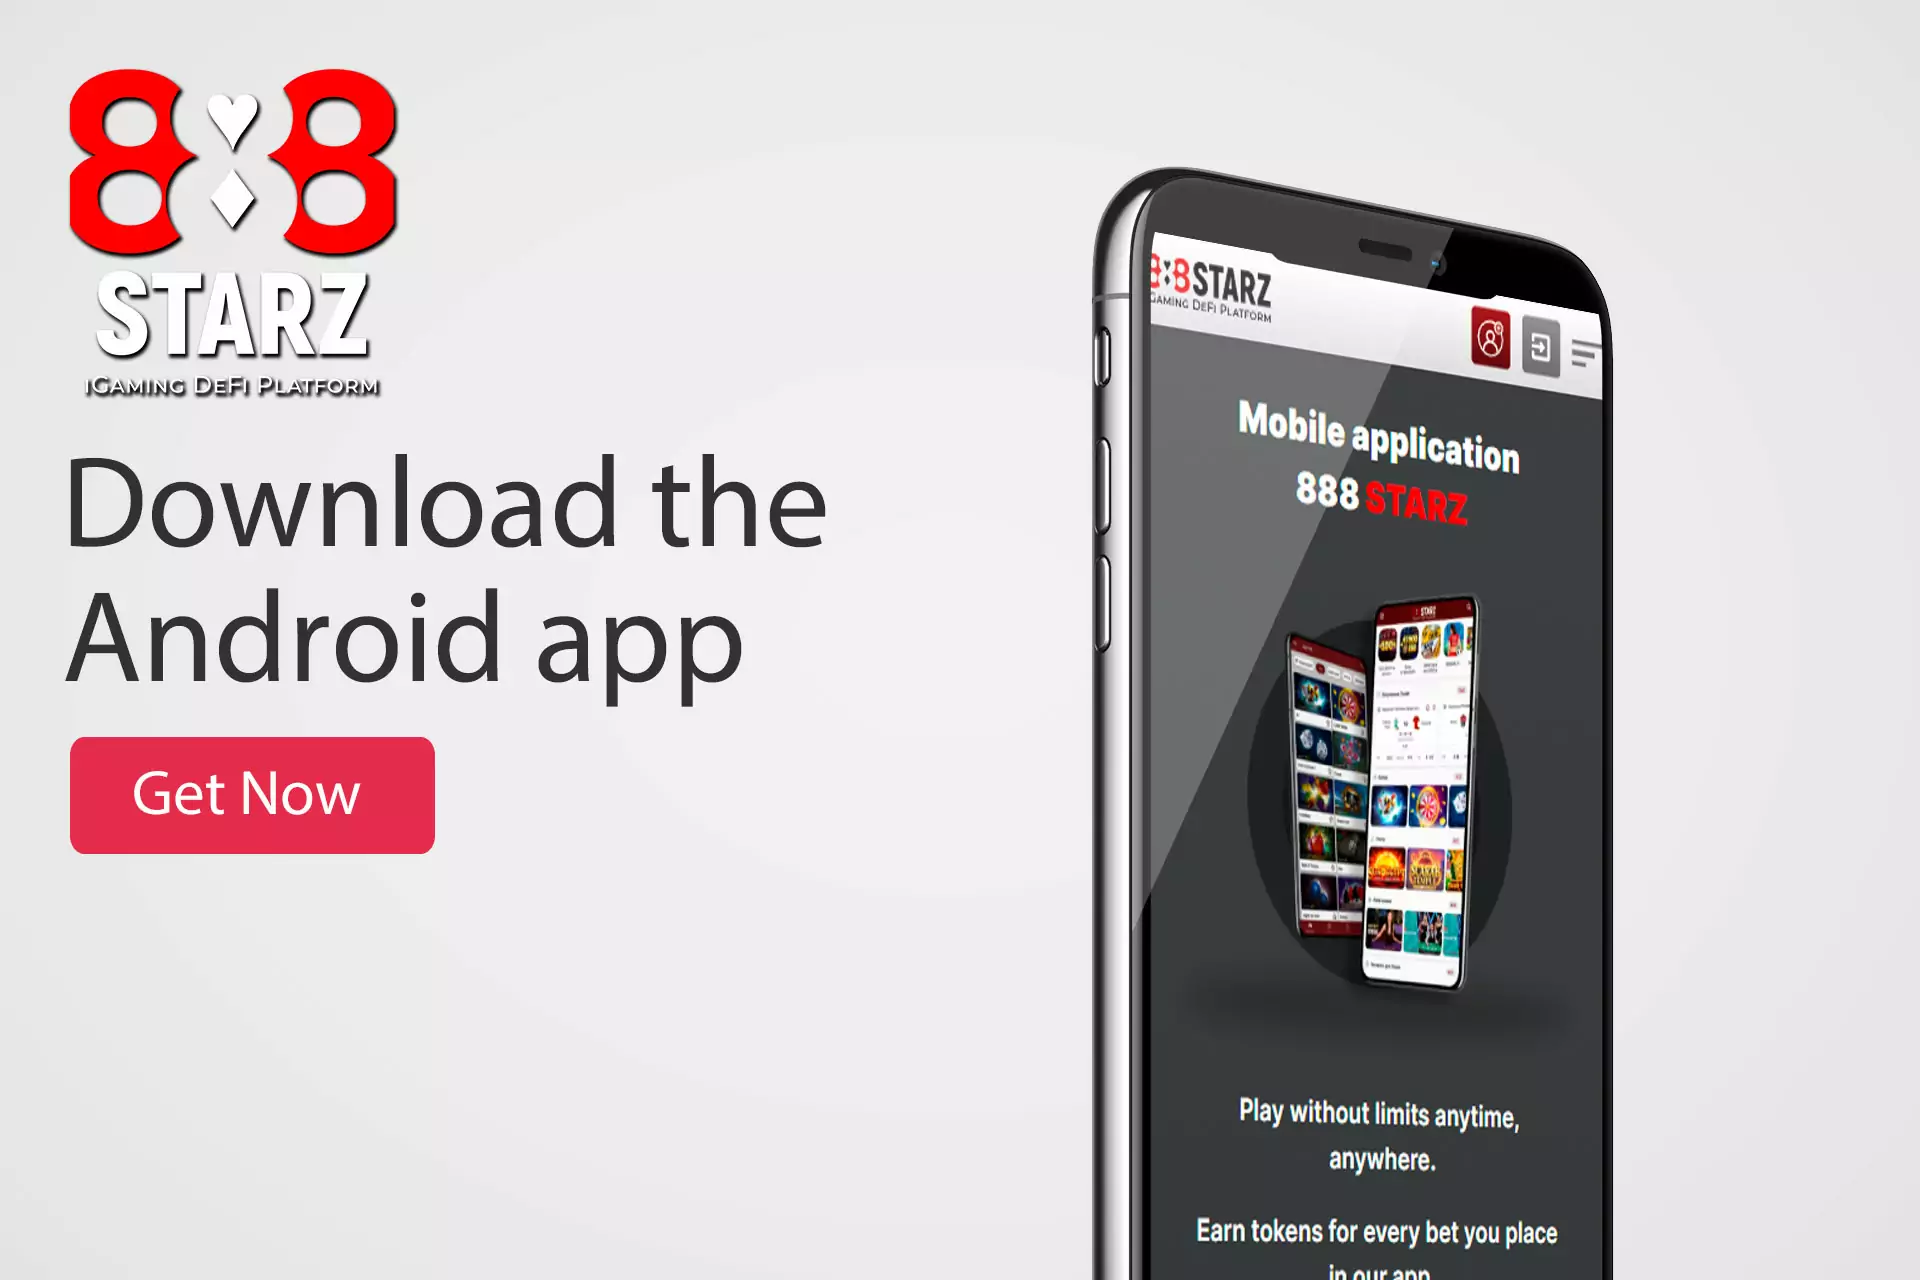 888starz ऐप को Android के लिए मुफ्त में डाउनलोड किया जा सकता है।